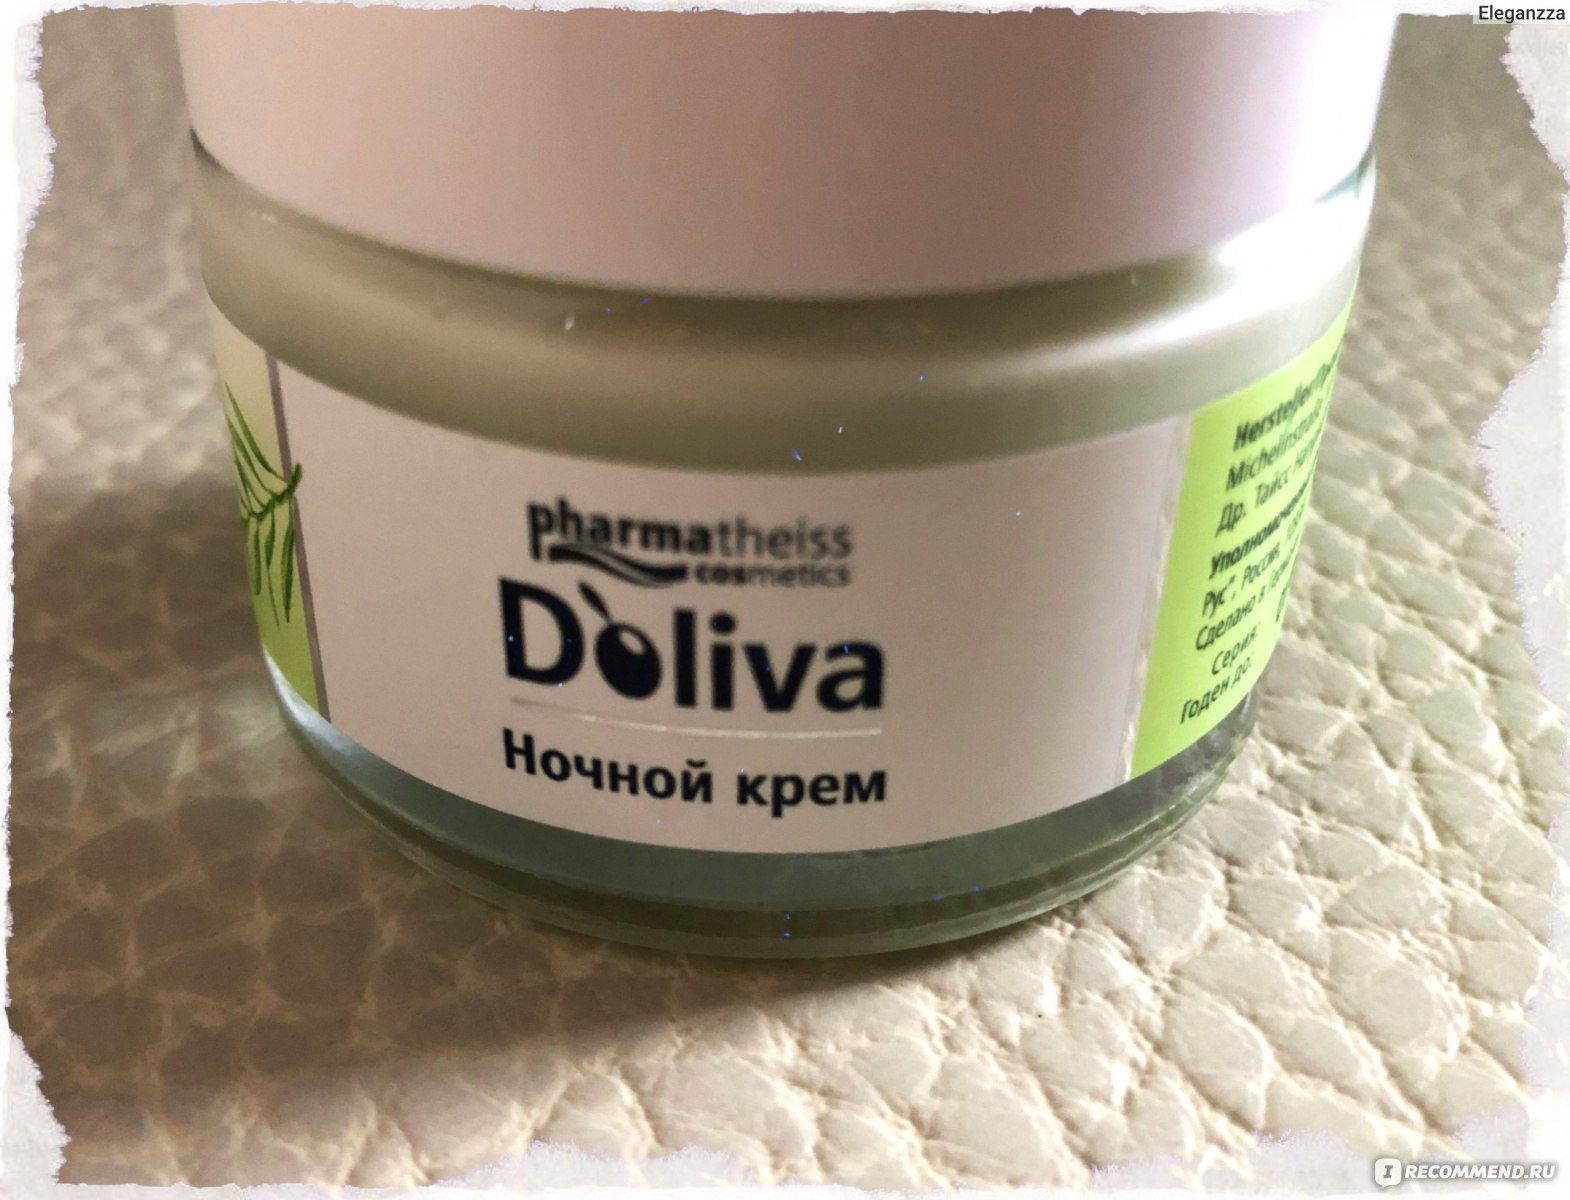 Ночной крем для лица с керамидами D'oliva Pharmatheiss Cosmetics 